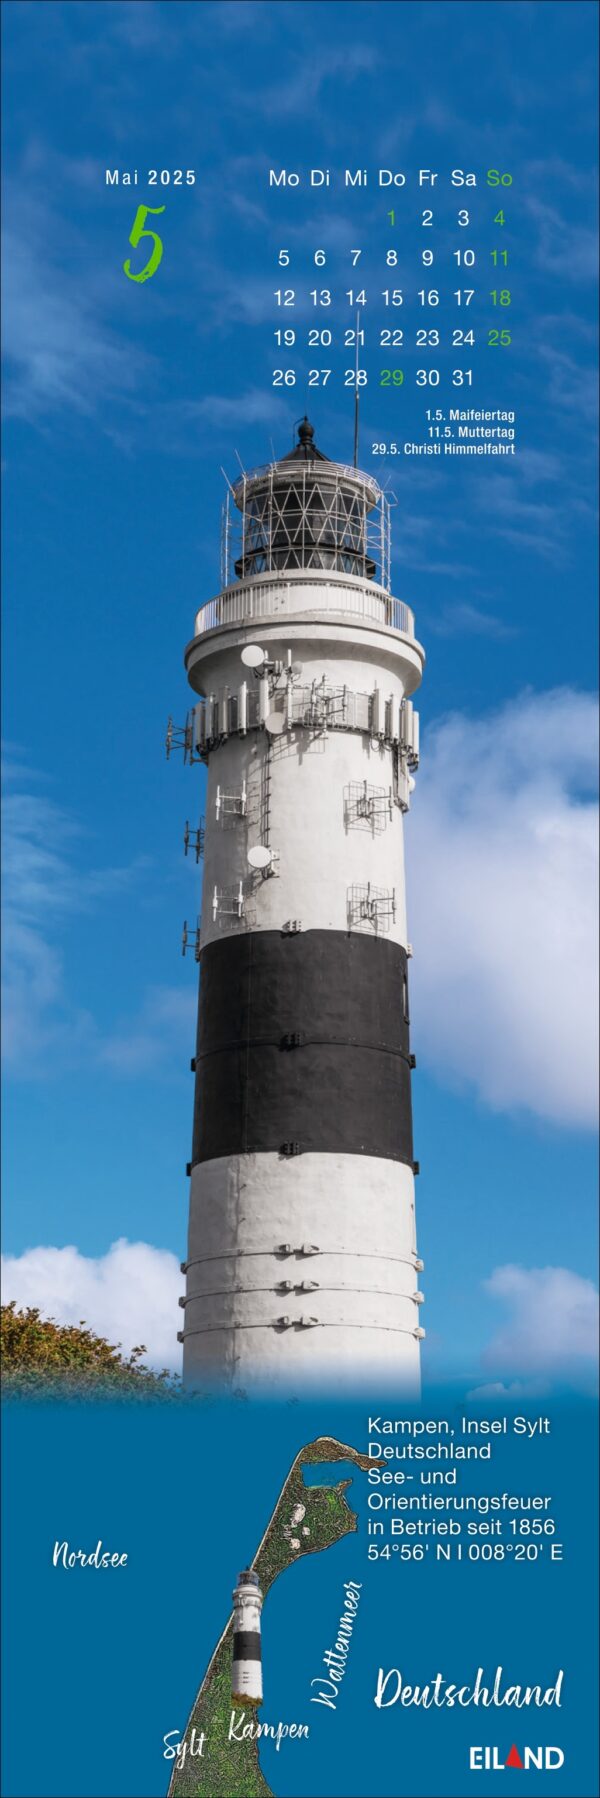 Ein hoher, historischer weißer Leuchtturm mit einem schwarzen Laternenraum und einem Balkon steht unter einem klaren Himmel. Ein LilleEiland - Kalender 2025 für Mai und eine Karte von Deutschland mit der Insel Sylt sind